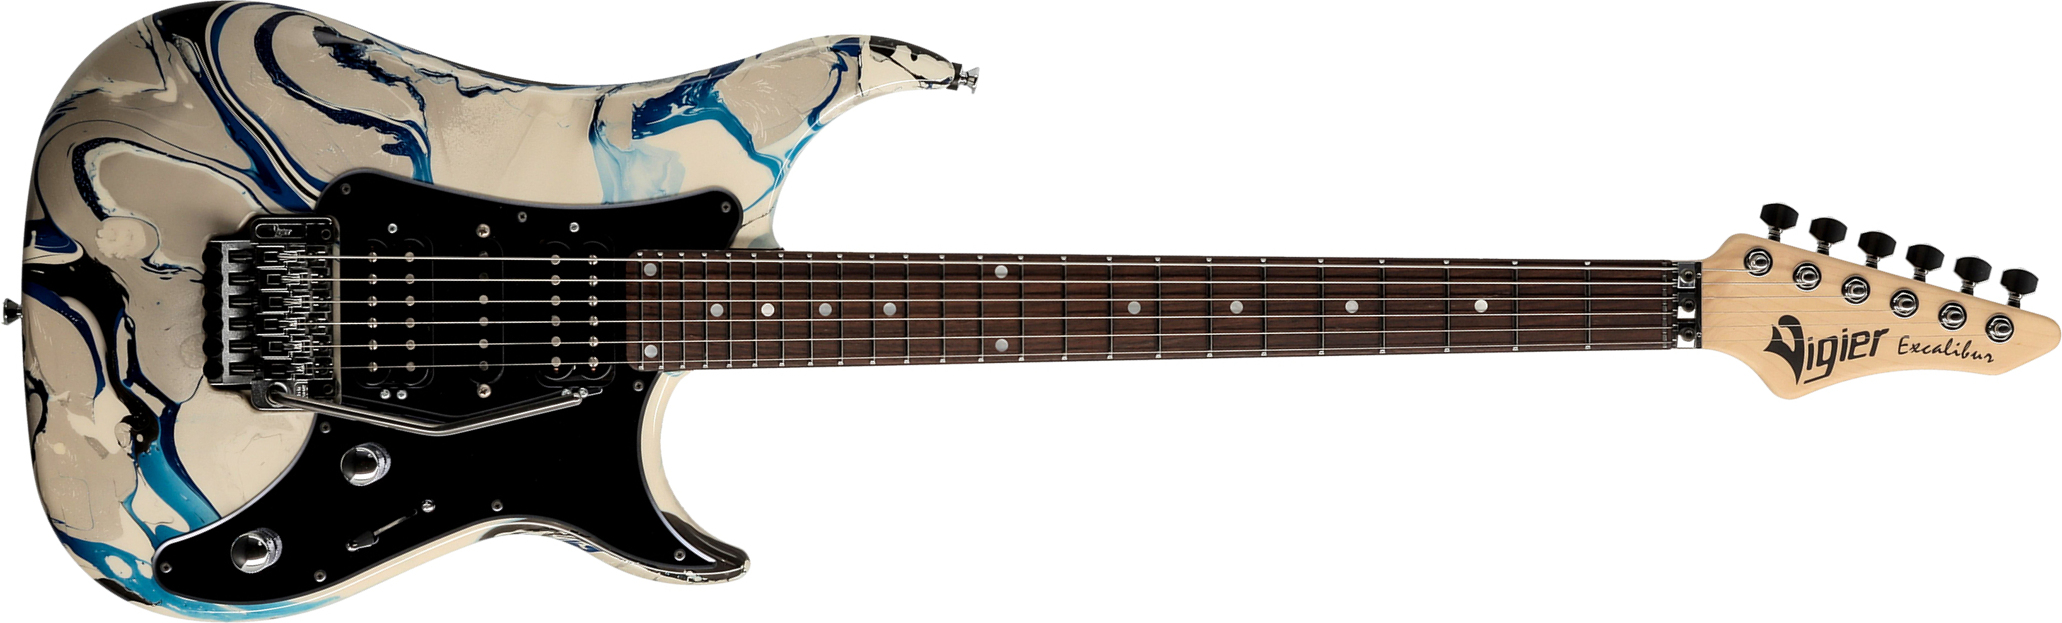 Vigier Excalibur Original Hsh Fr Rw - Rock Art Grey Blue - Str shape electric guitar - Main picture